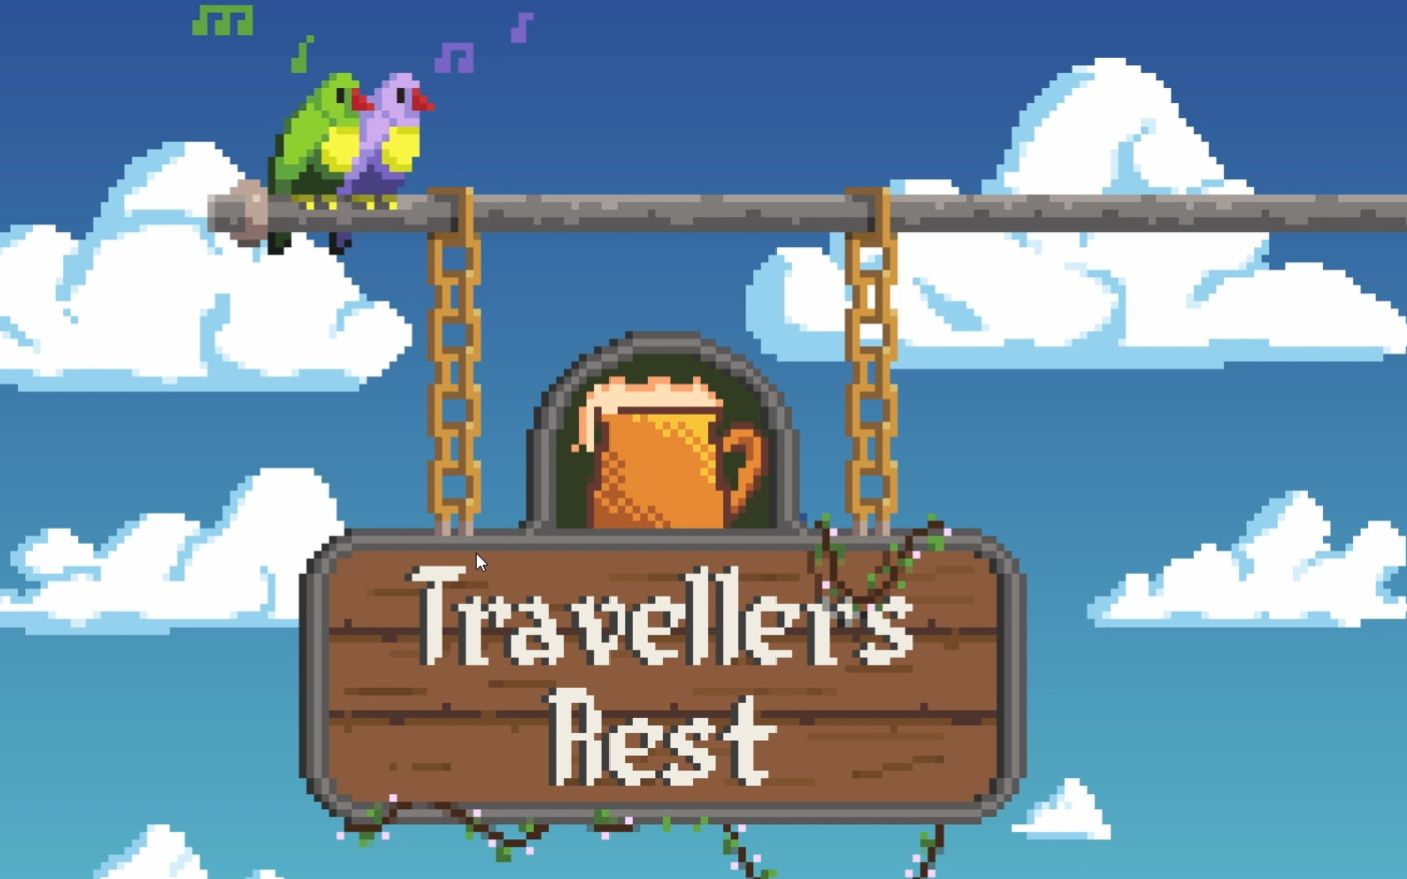 像素酒馆经营游戏《旅者之憩》 将在个别地区调整价格 二次世界 第3张